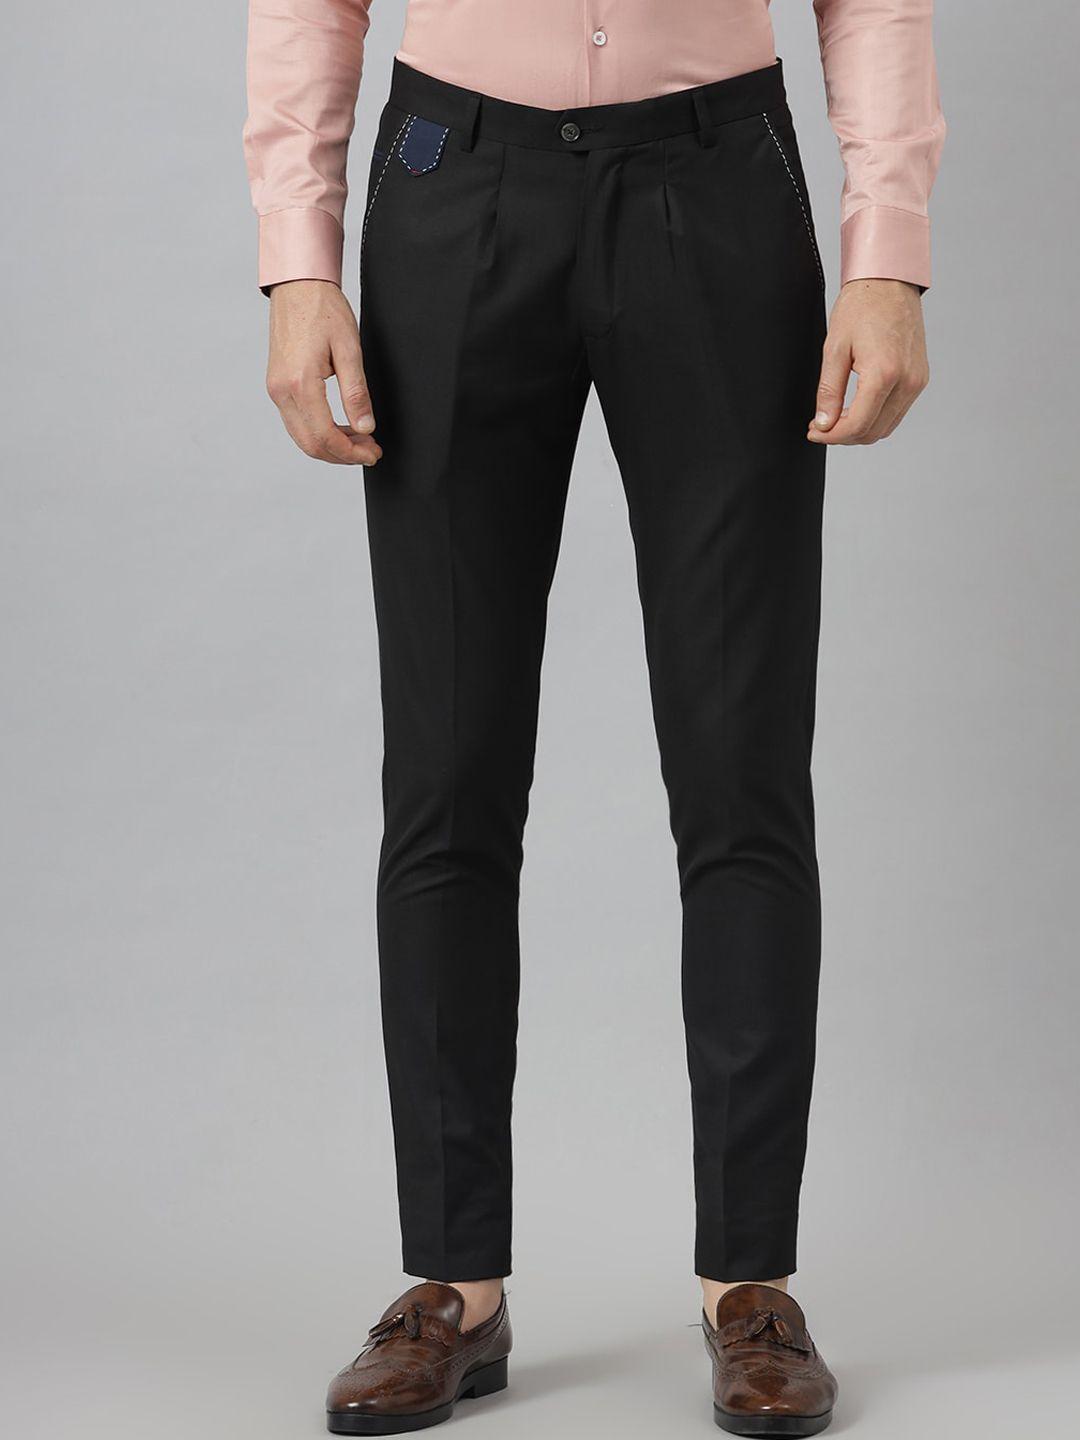 mr-button-men-black-textured-slim-fit-trousers